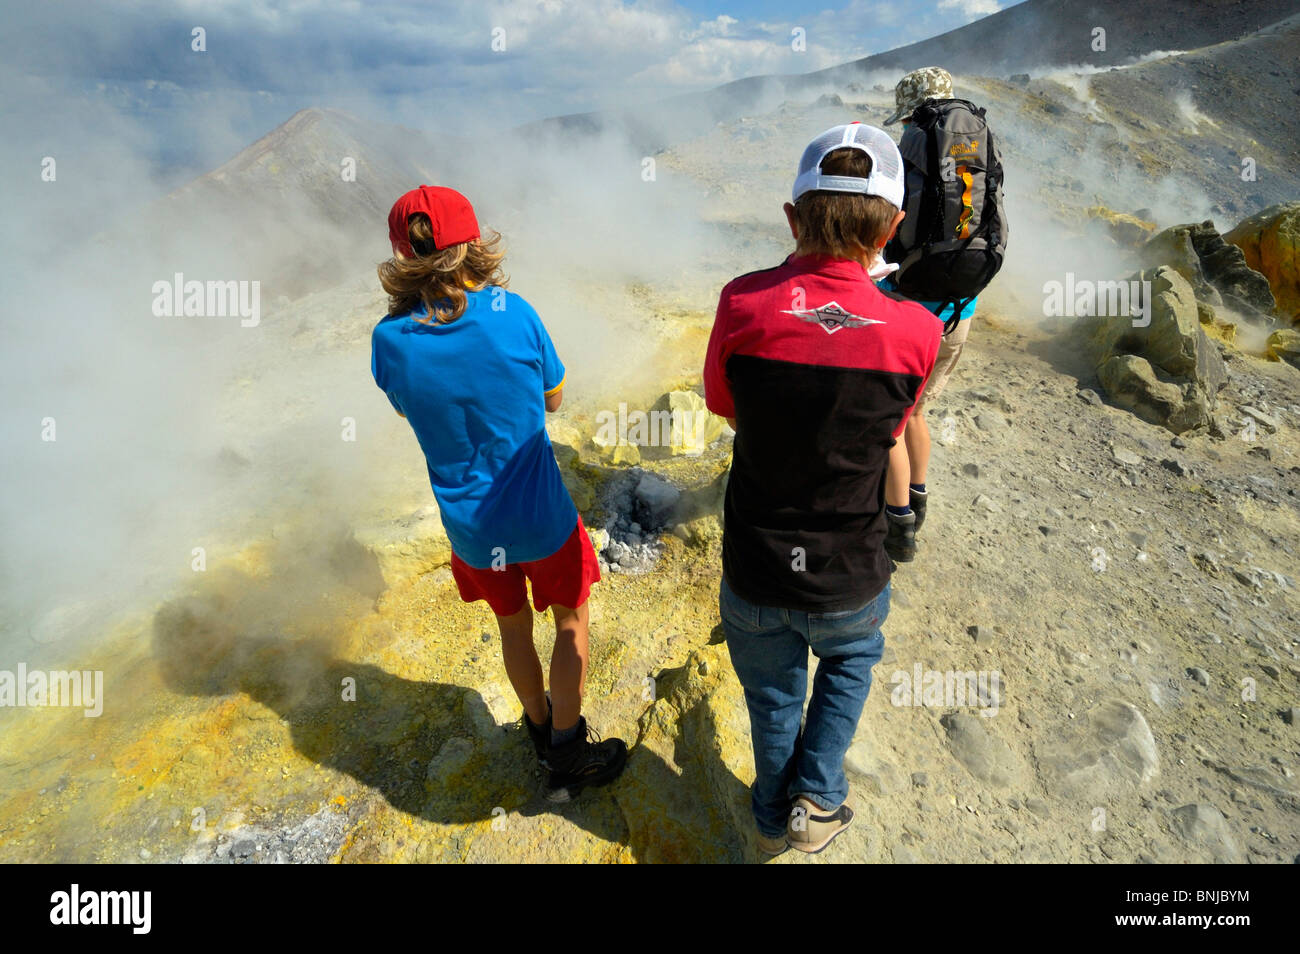 Vulkans dampft Dämpfe Dampf Schwefel Schwefelgelb Italien Insel Insel Vulkan Insel Grat zu gefährlich Gefahr Bedrohung schützen. Stockfoto